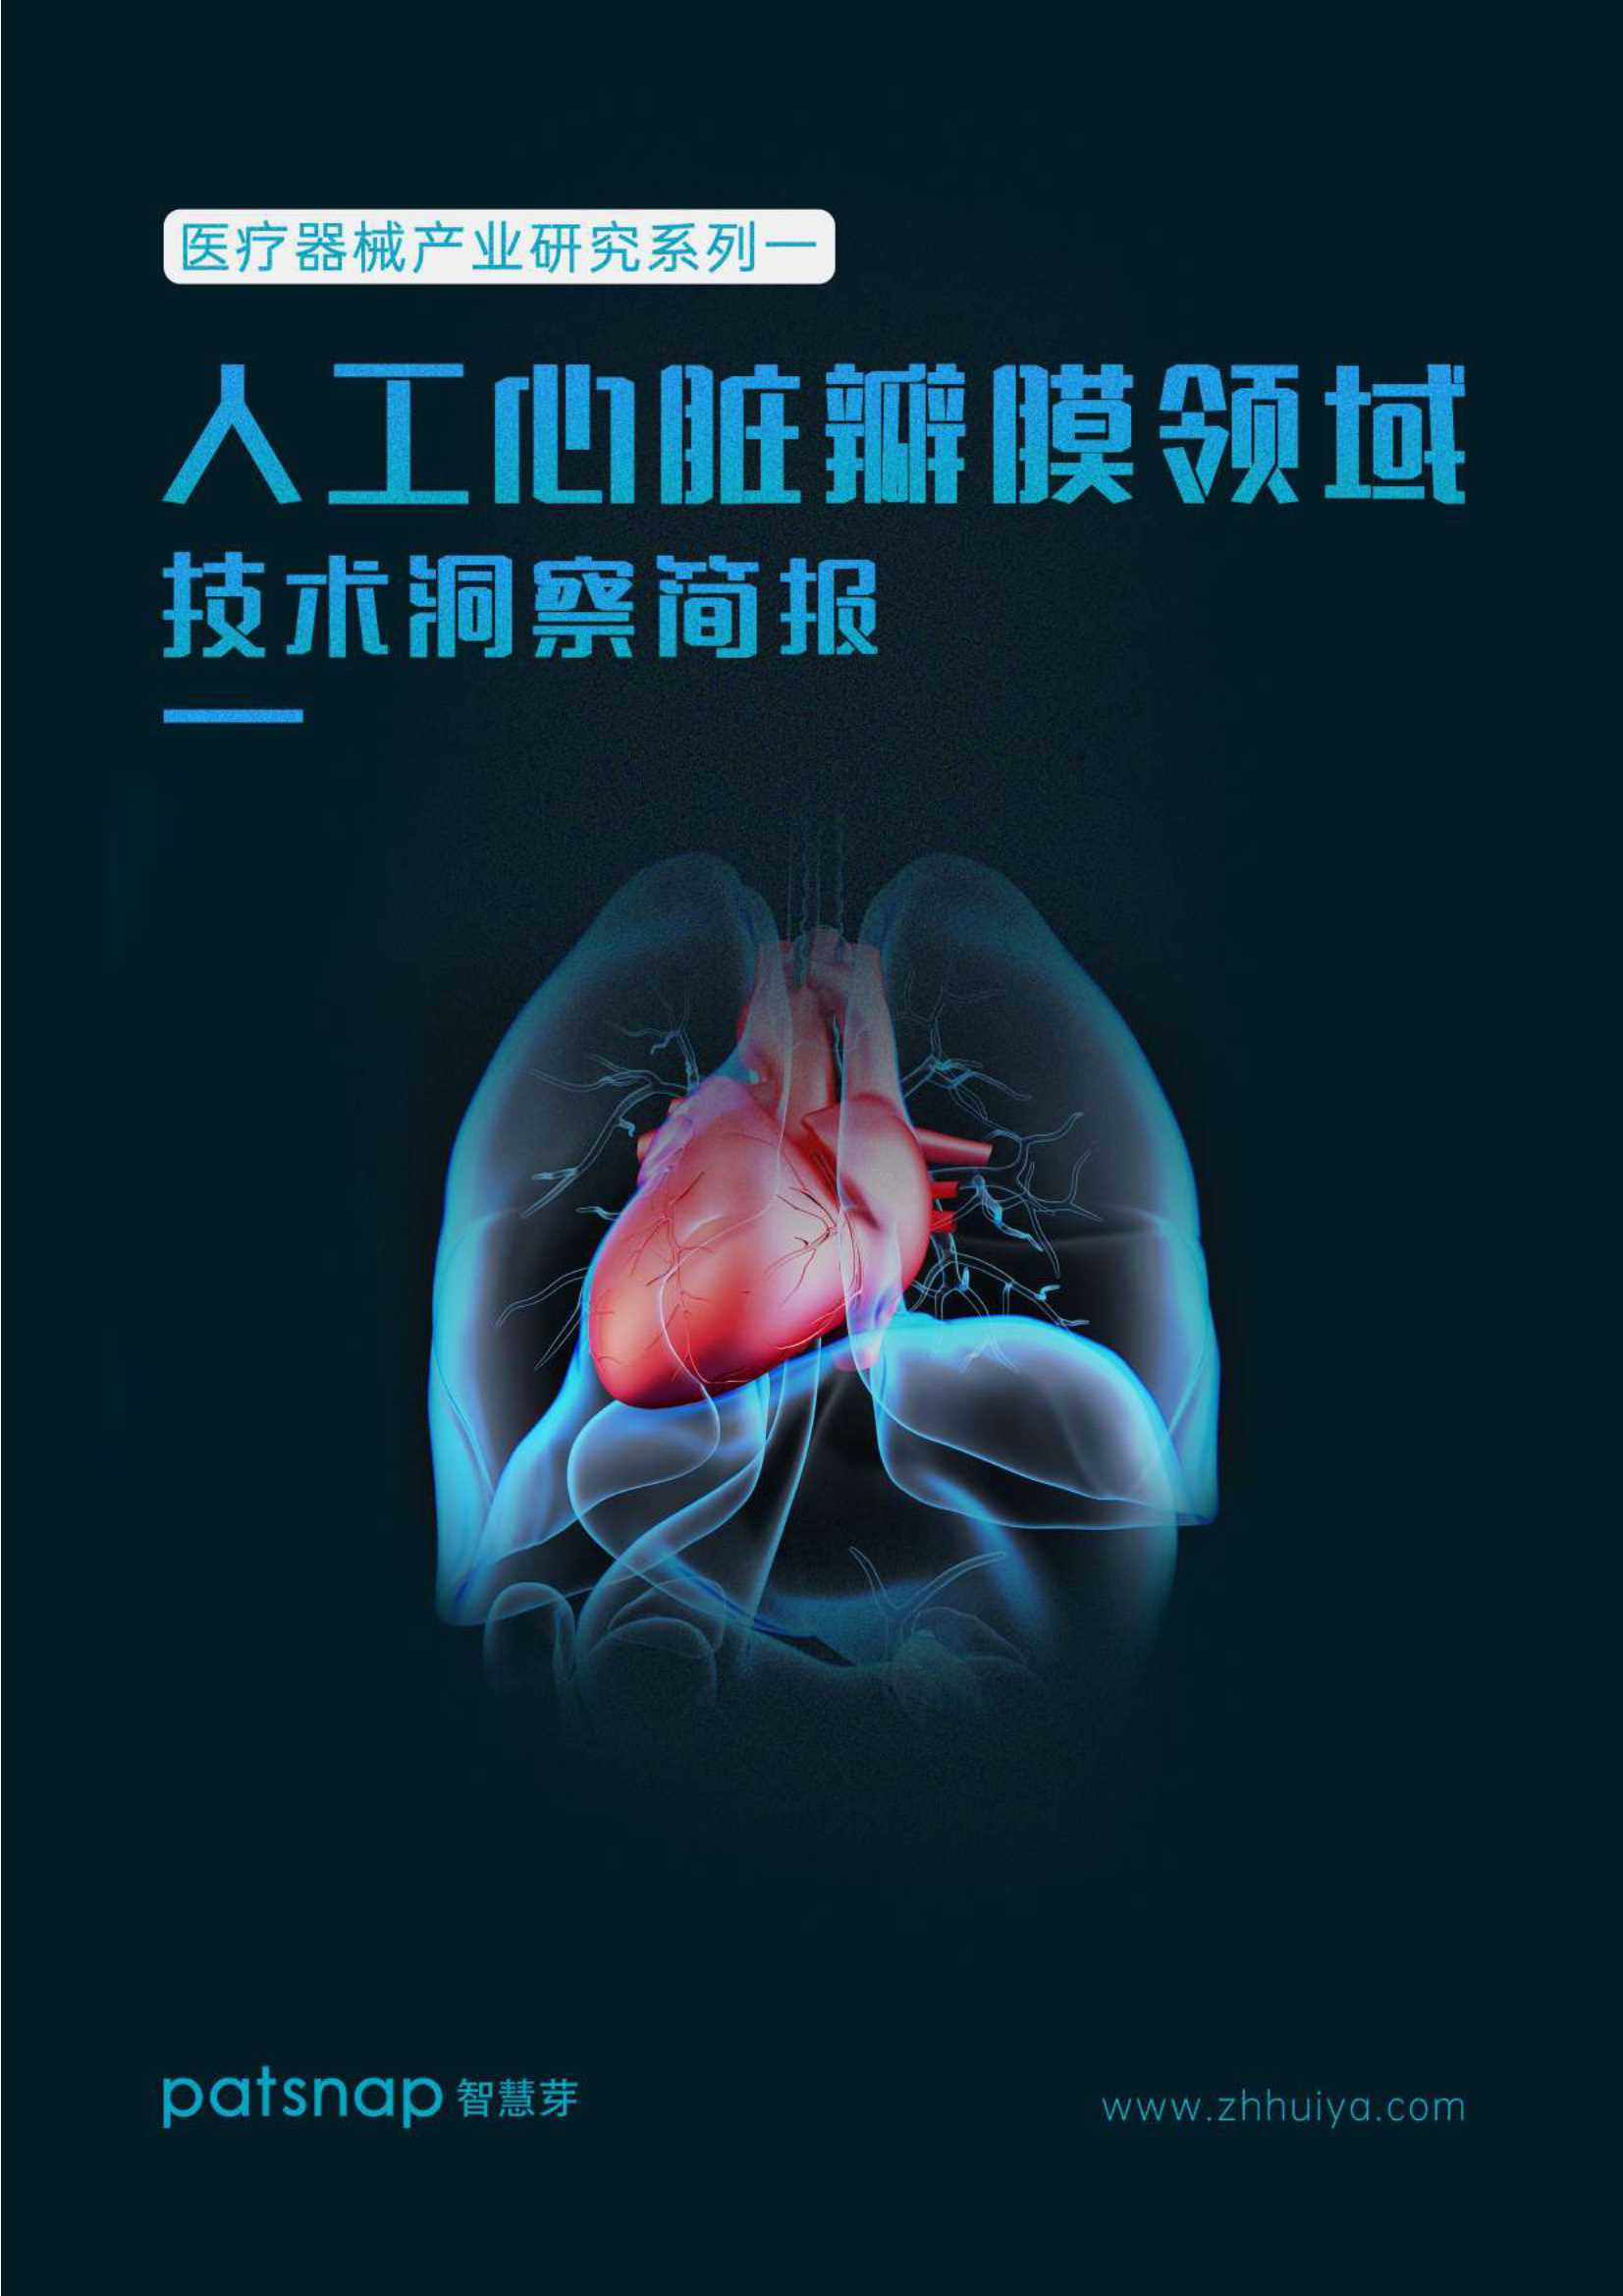 智慧芽-医疗器械产业研究系列一——人工心脏瓣膜领域技术洞察简报-2021.11-15页